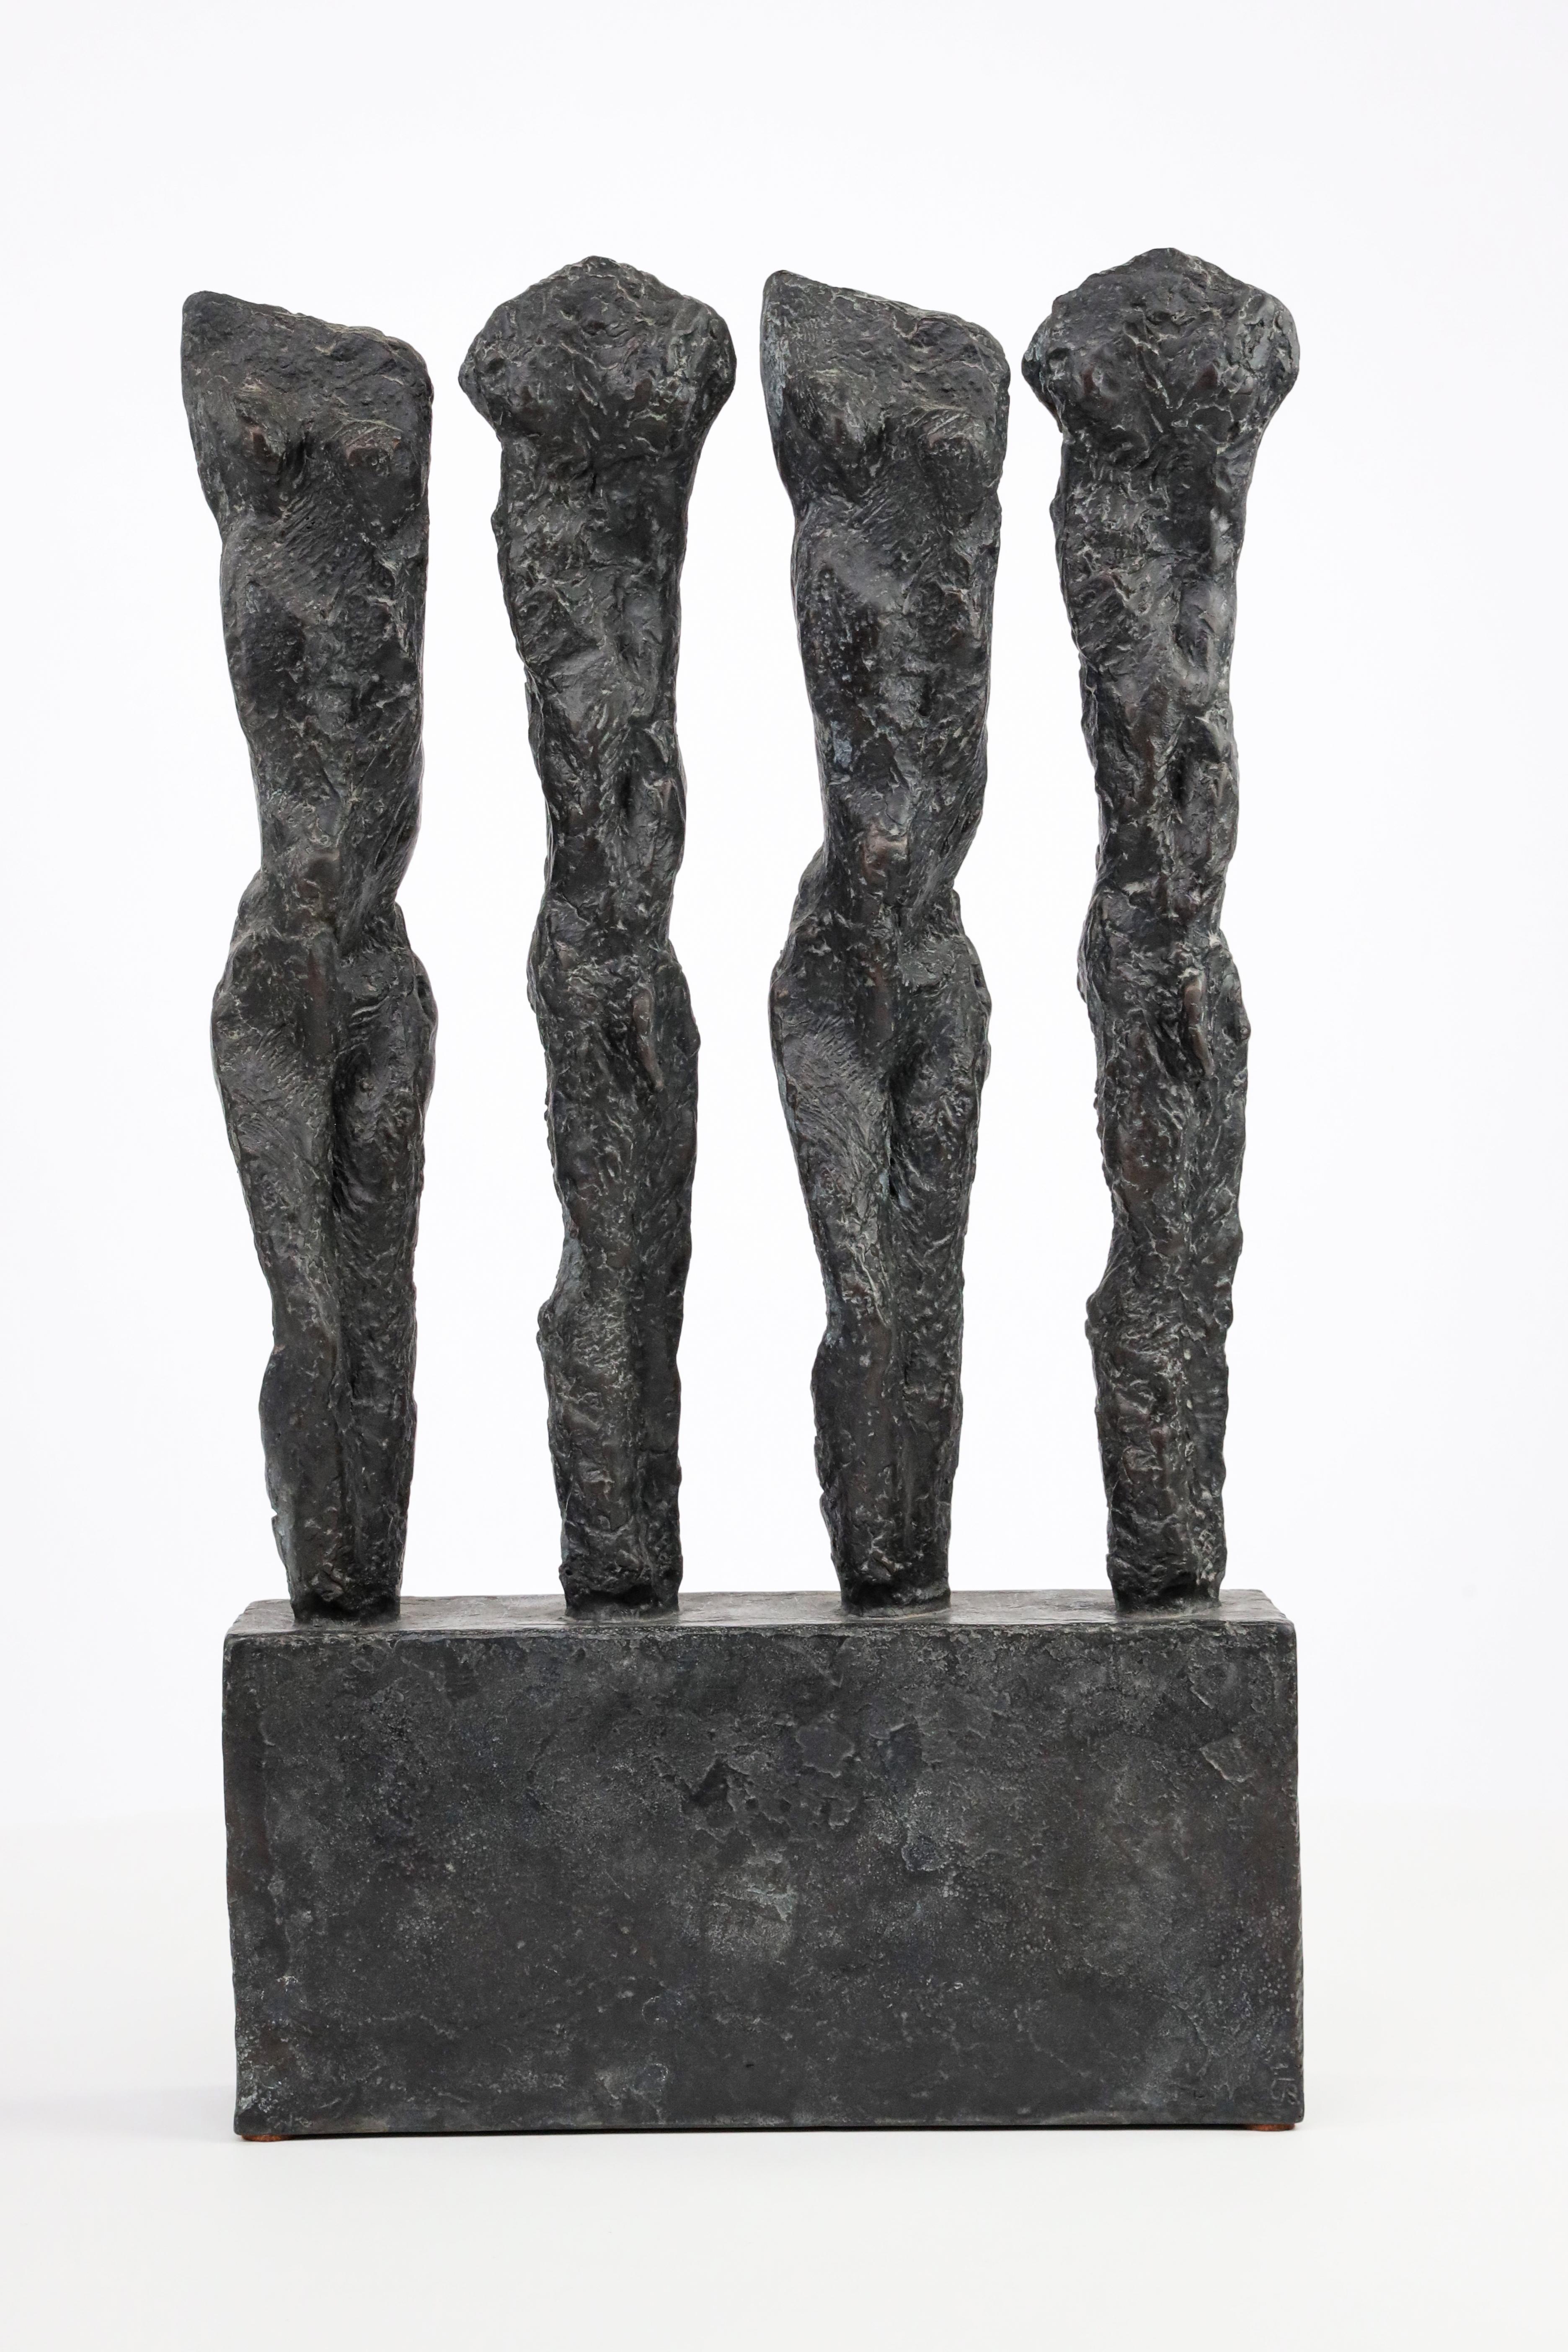 In Line ist eine Bronzeskulptur der französischen Künstlerin Martine Demal mit den Maßen 43 × 25 × 7 cm (16,9 × 9,8 × 2,8 in). Diese Abmessungen schließen den Sockel mit ein, der 11 x 25 x 6 cm misst (4,3 x 9,8 x 2,4 in). 
Die Skulptur ist signiert